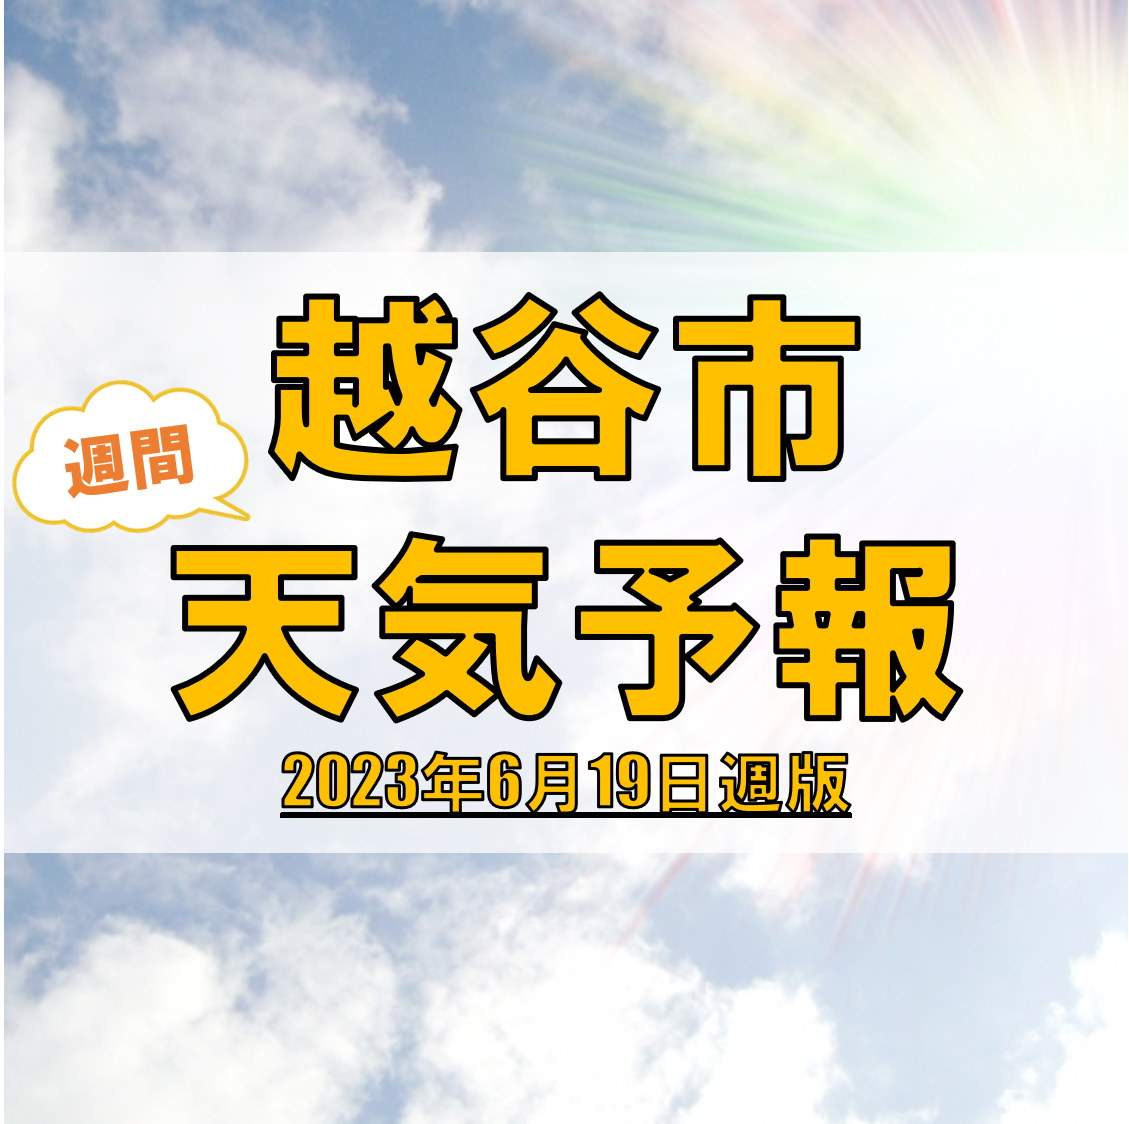 越谷市の天気 週間予報【2023年6月19日週】